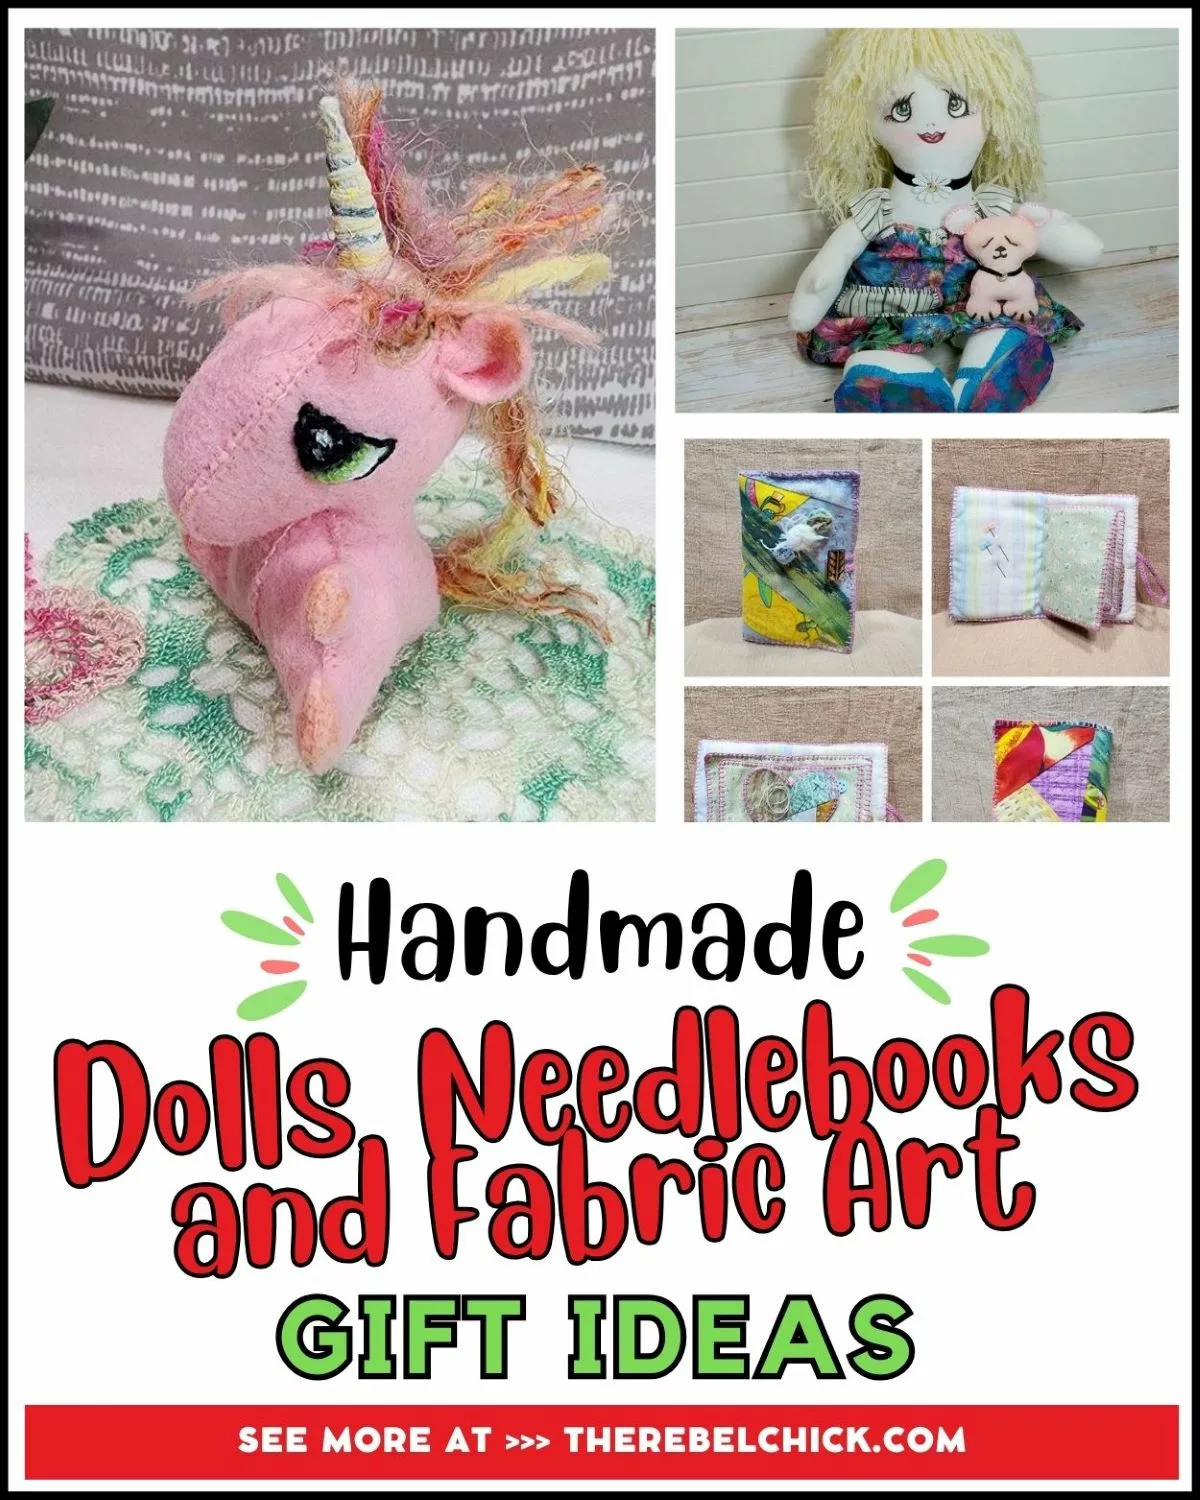 Handmade Dolls, Needlebooks, and Fabric Art - LemonPeppoArt